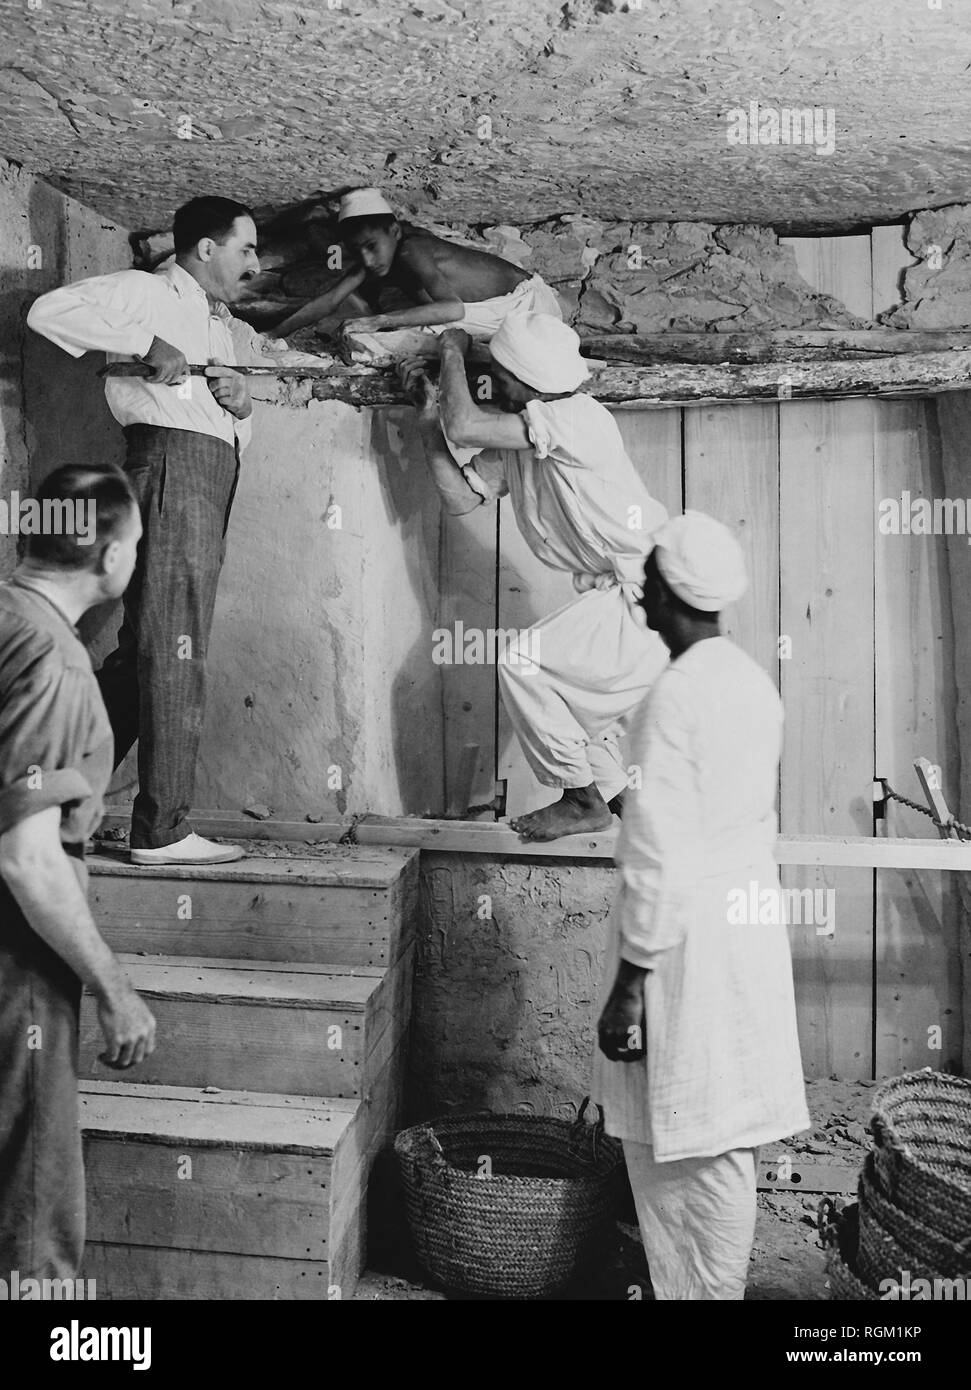 Howard Carter qui a découvert la tombe de Toutankhamon dans la Vallée des Rois, Louxor, Egypte. Novembre 1922. Carter à l'aide d'un levier à l'intérieur de la tombe. À partir de l'image numérisée dans les archives de communiqués de presse (anciennement Service Portrait Portrait Bureau) Banque D'Images